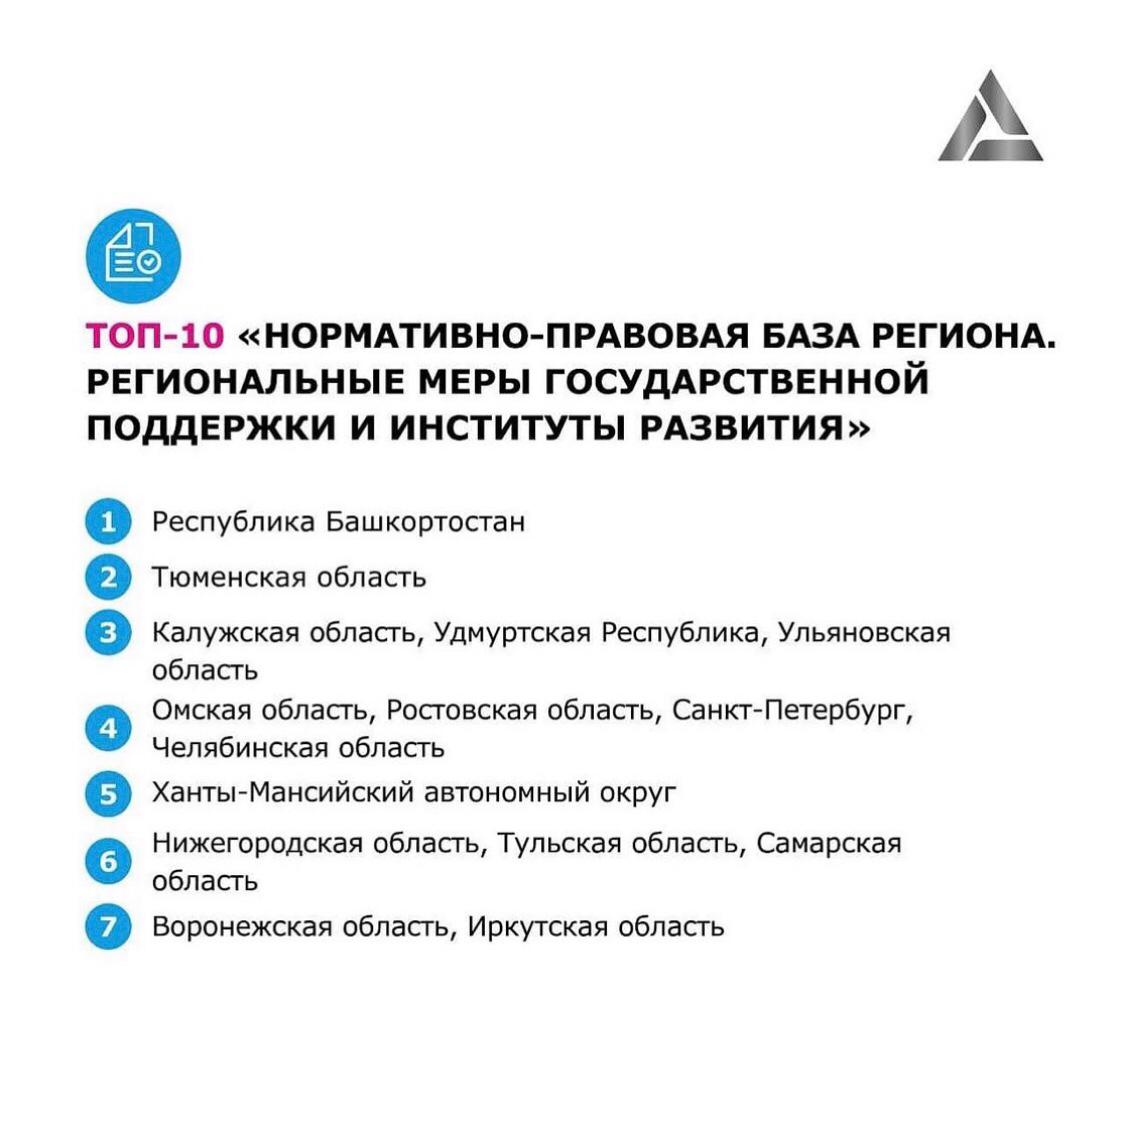 Иркутская область вошла в топ-10 регионов России, реализующих меры государственной поддержки предприятий.